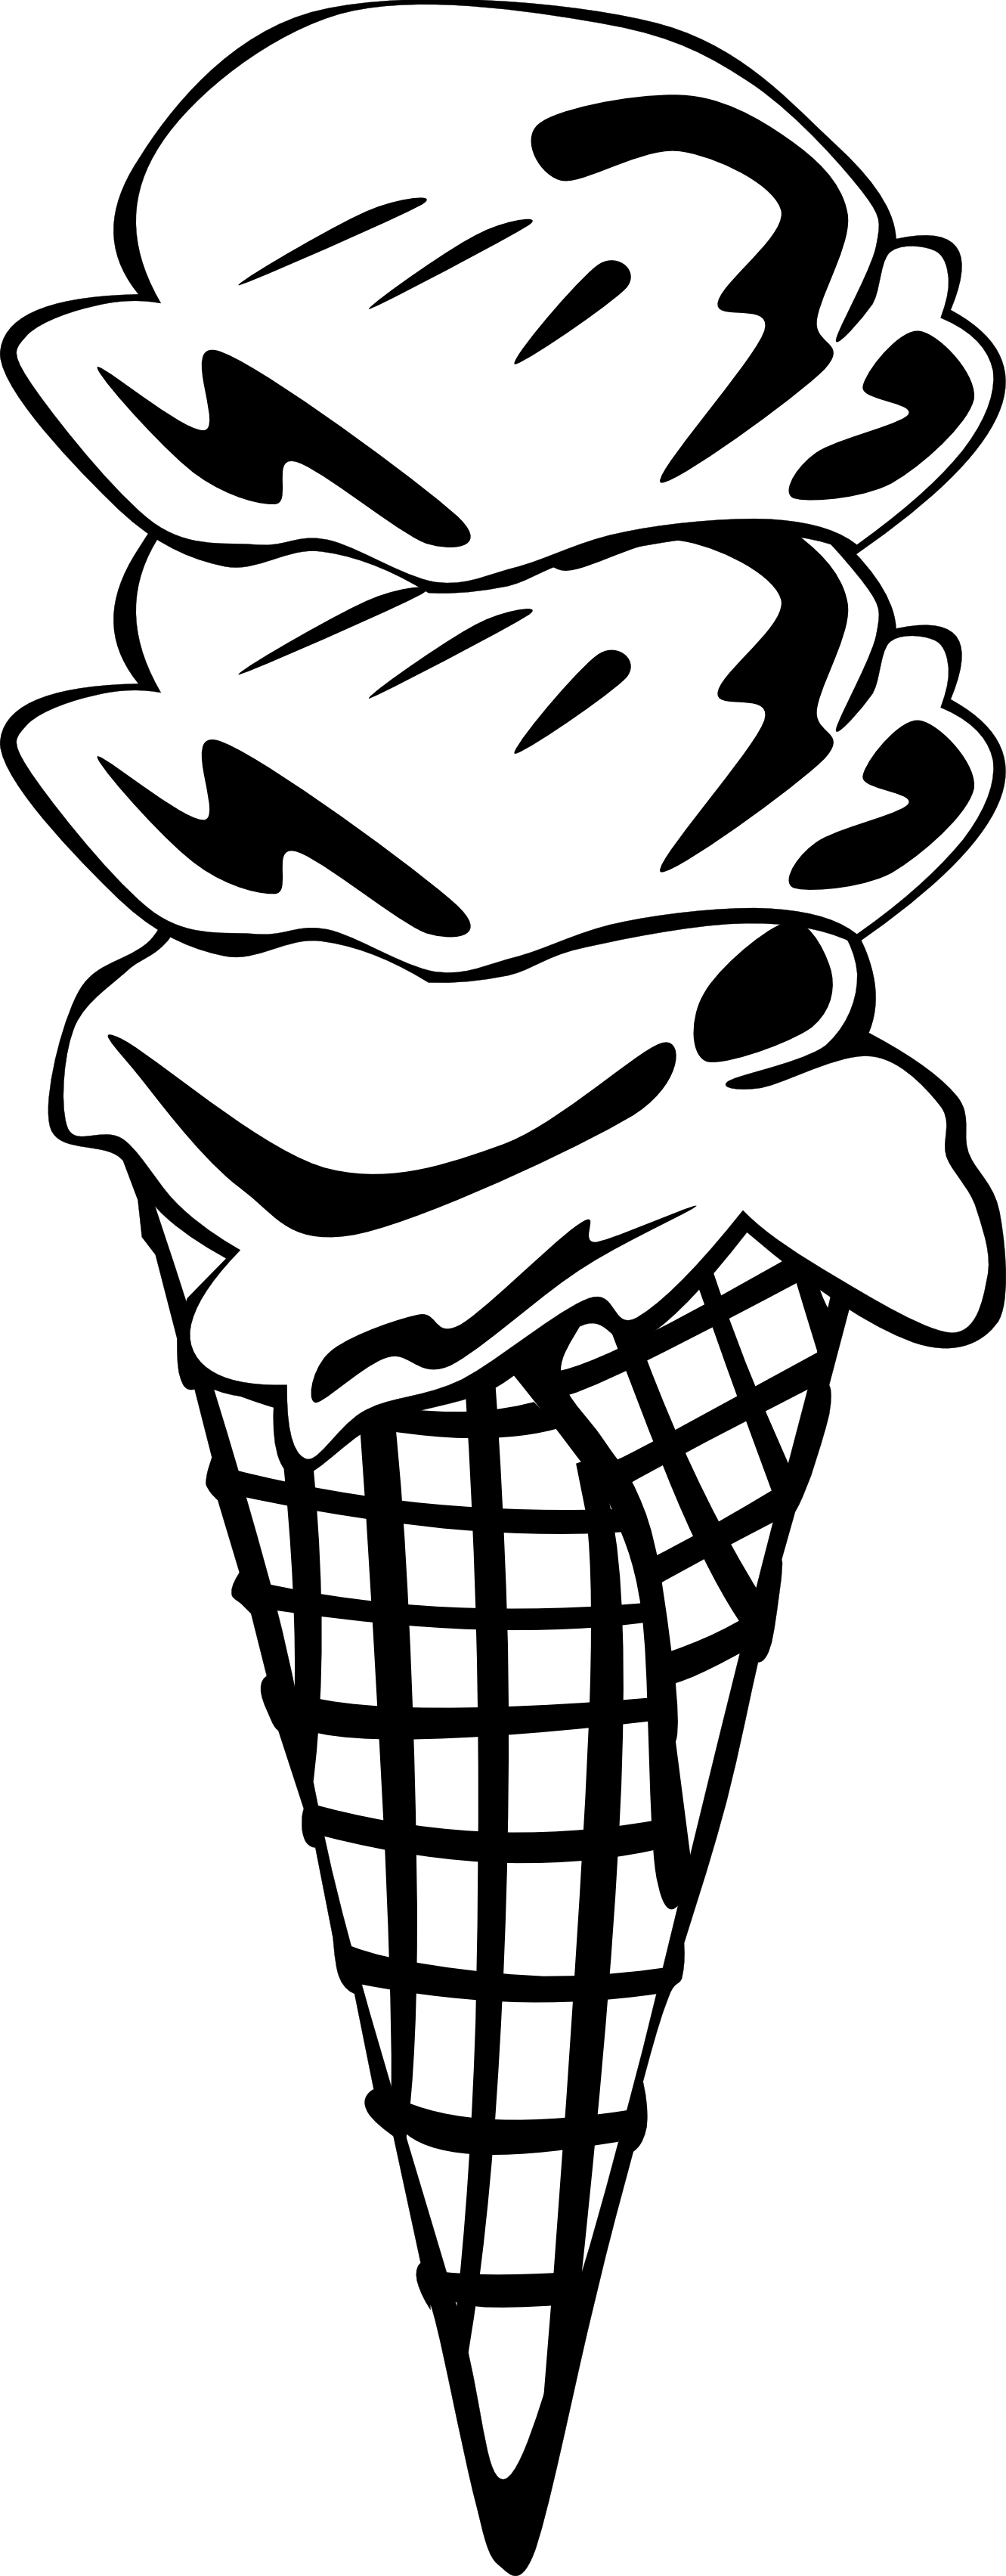 ice cream cone clipart black and white - photo #42